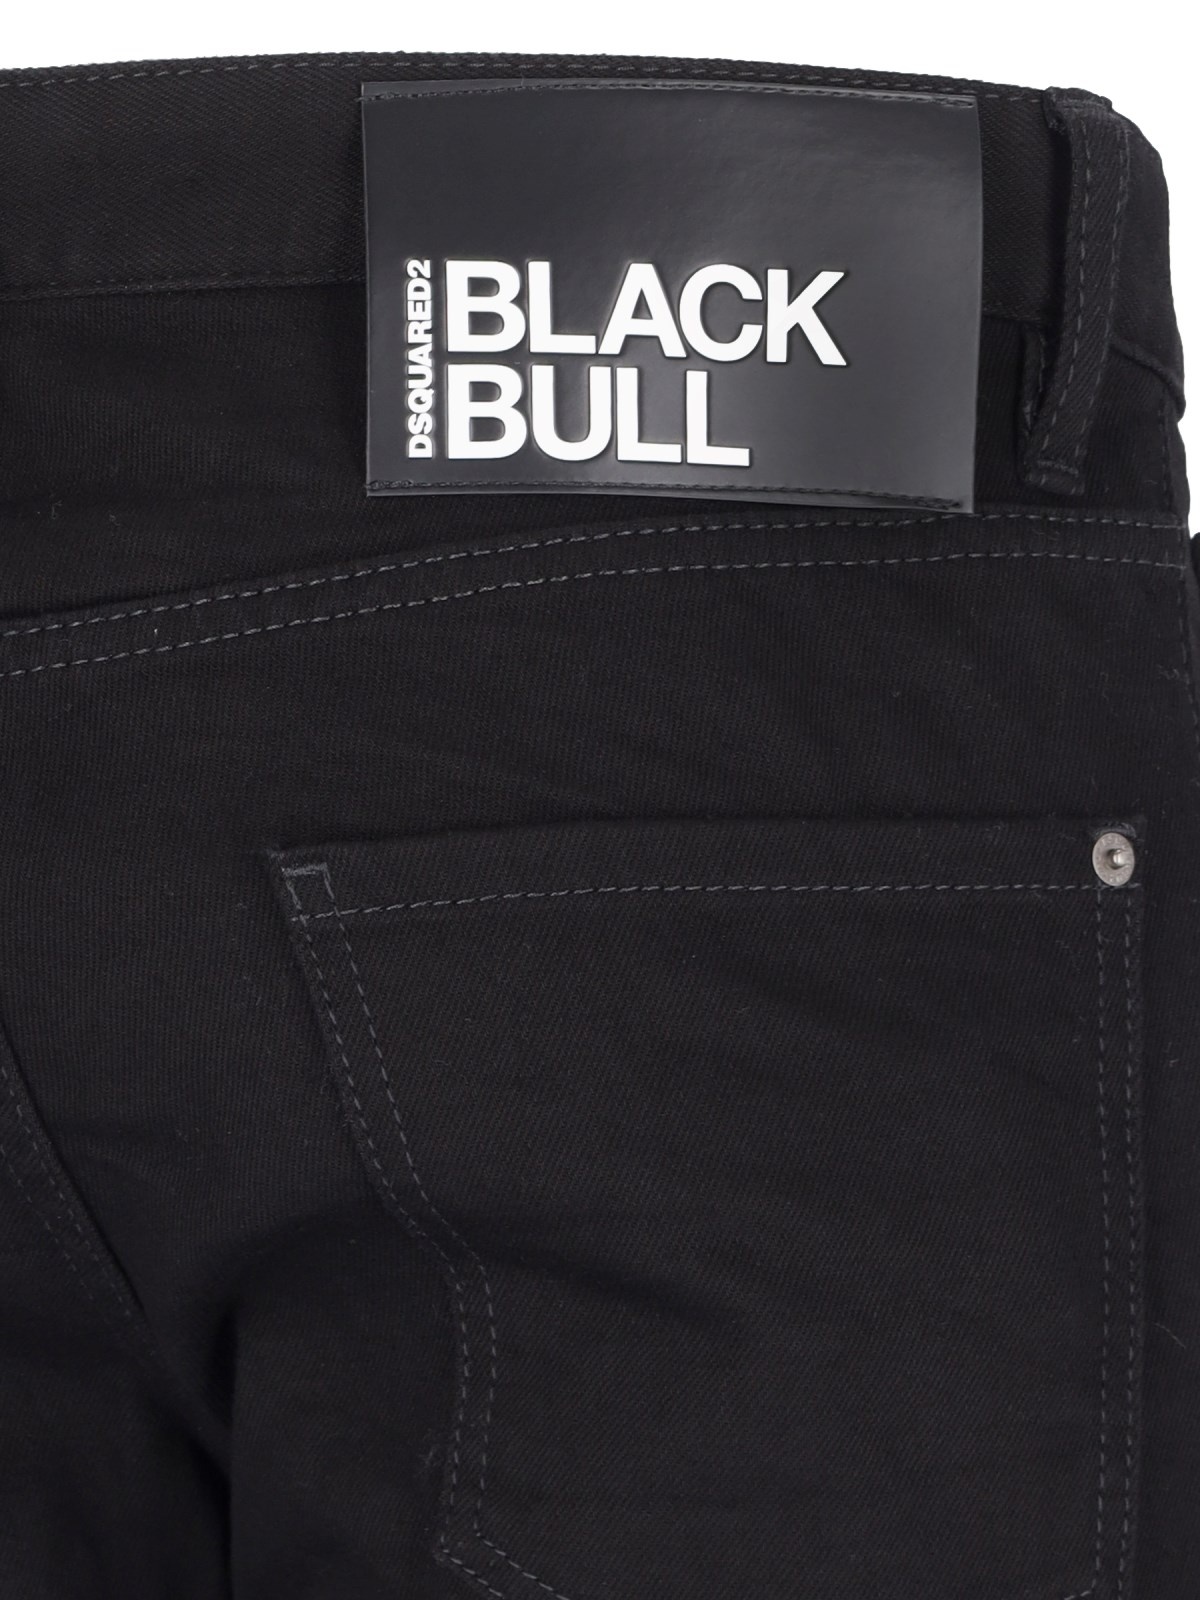 'BLACK BULL' JEANS - 5